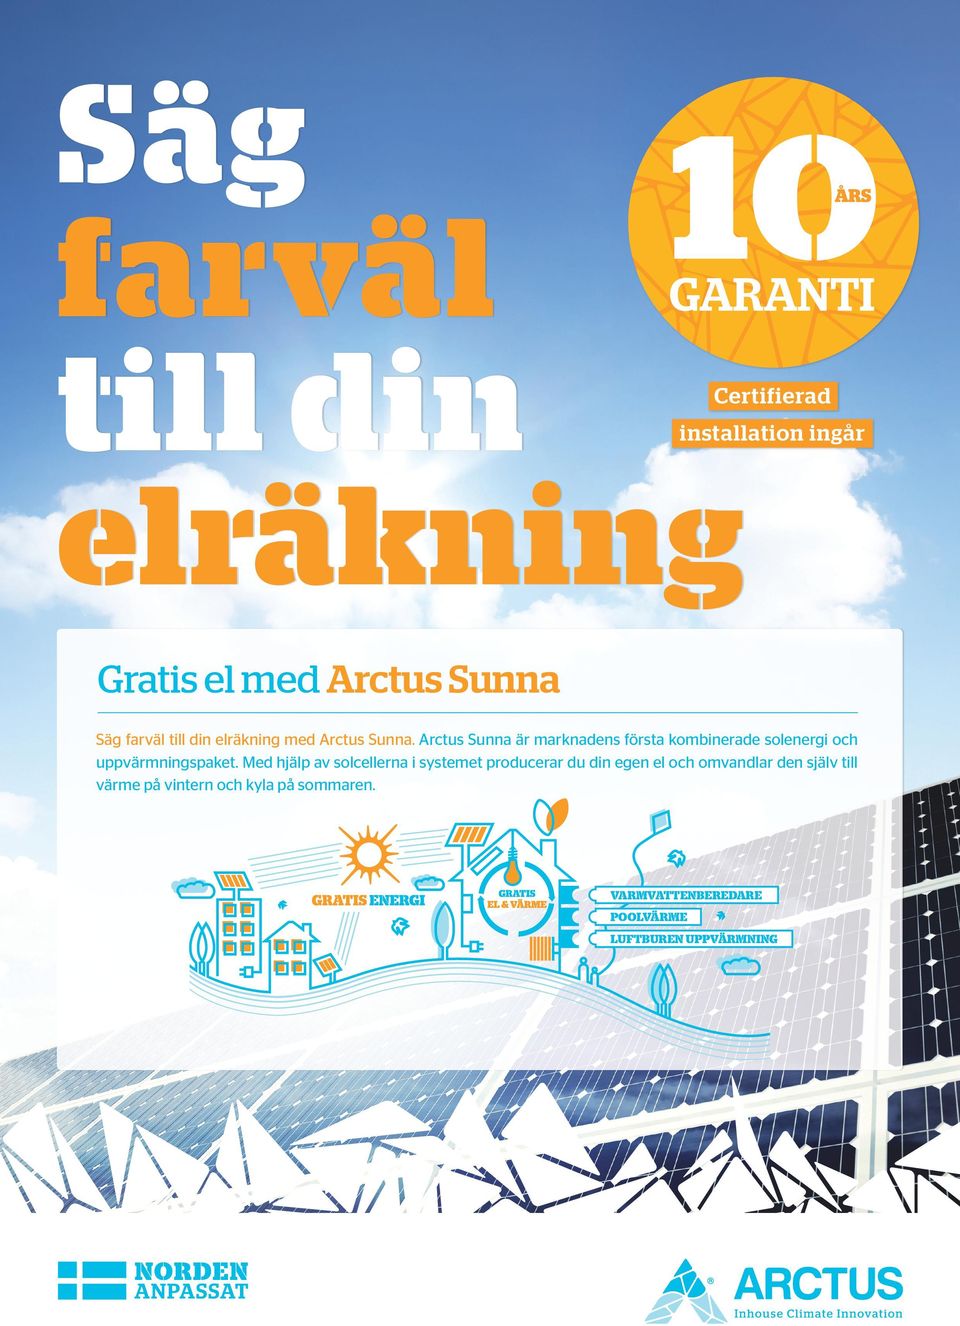 Arctus Sunna är marknadens första kombinerade solenergi och uppvärmningspaket.